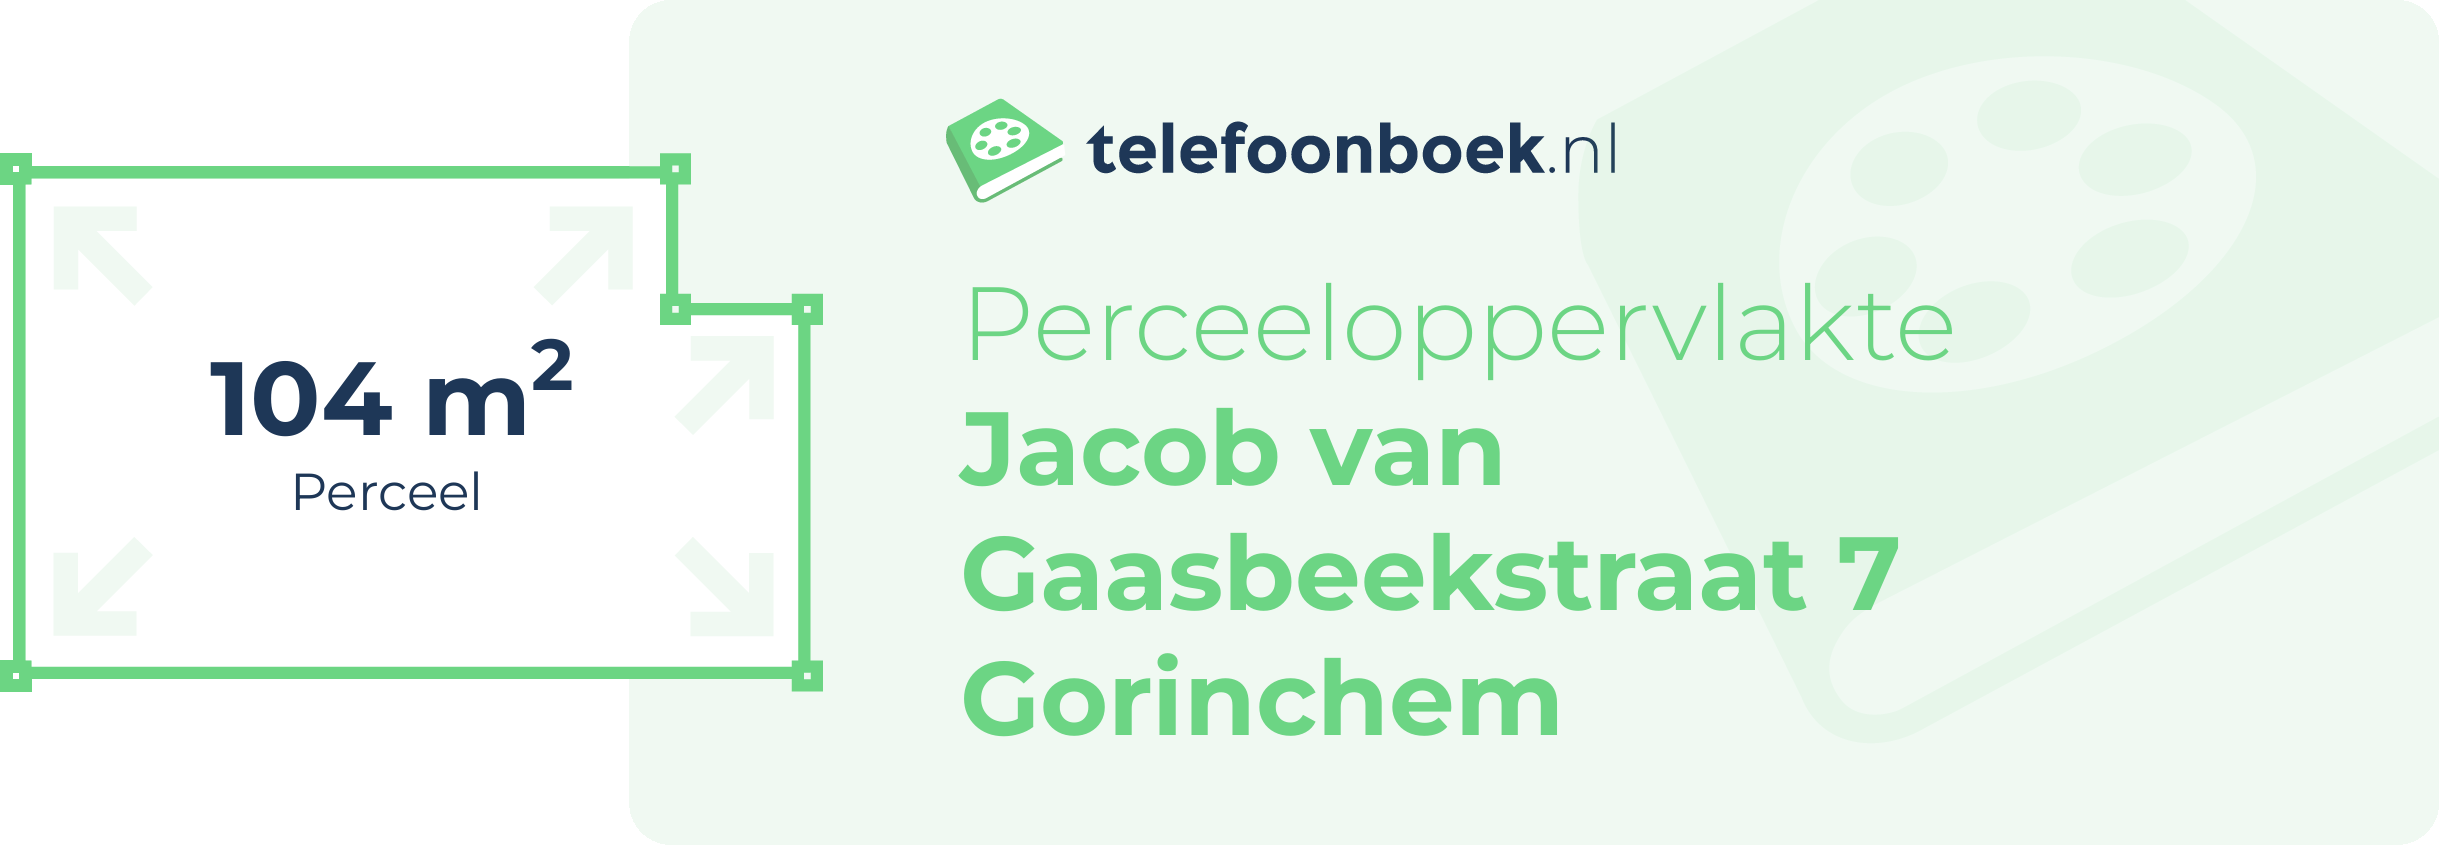 Perceeloppervlakte Jacob Van Gaasbeekstraat 7 Gorinchem